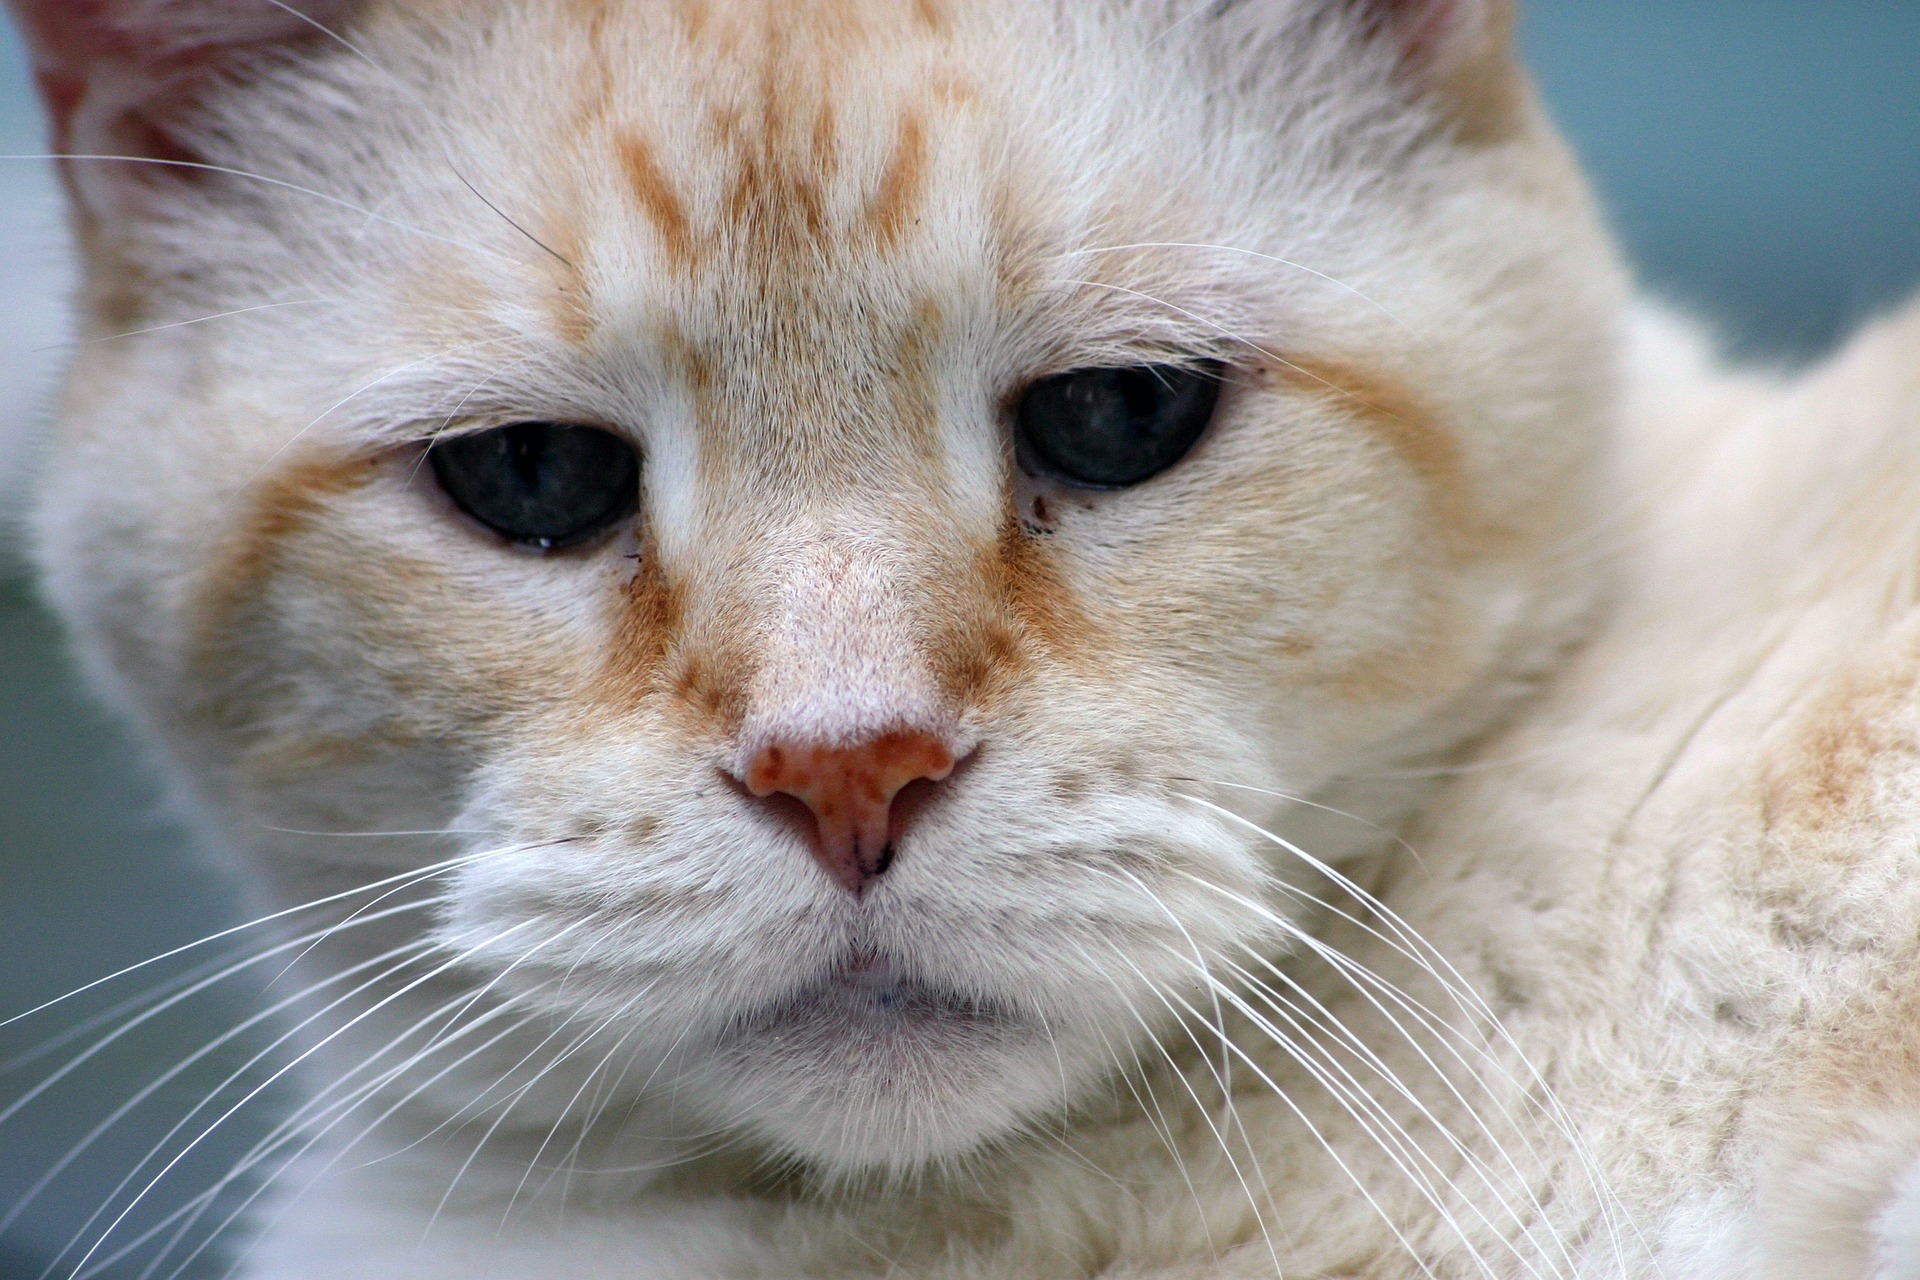 Senior orange cat with graying fur